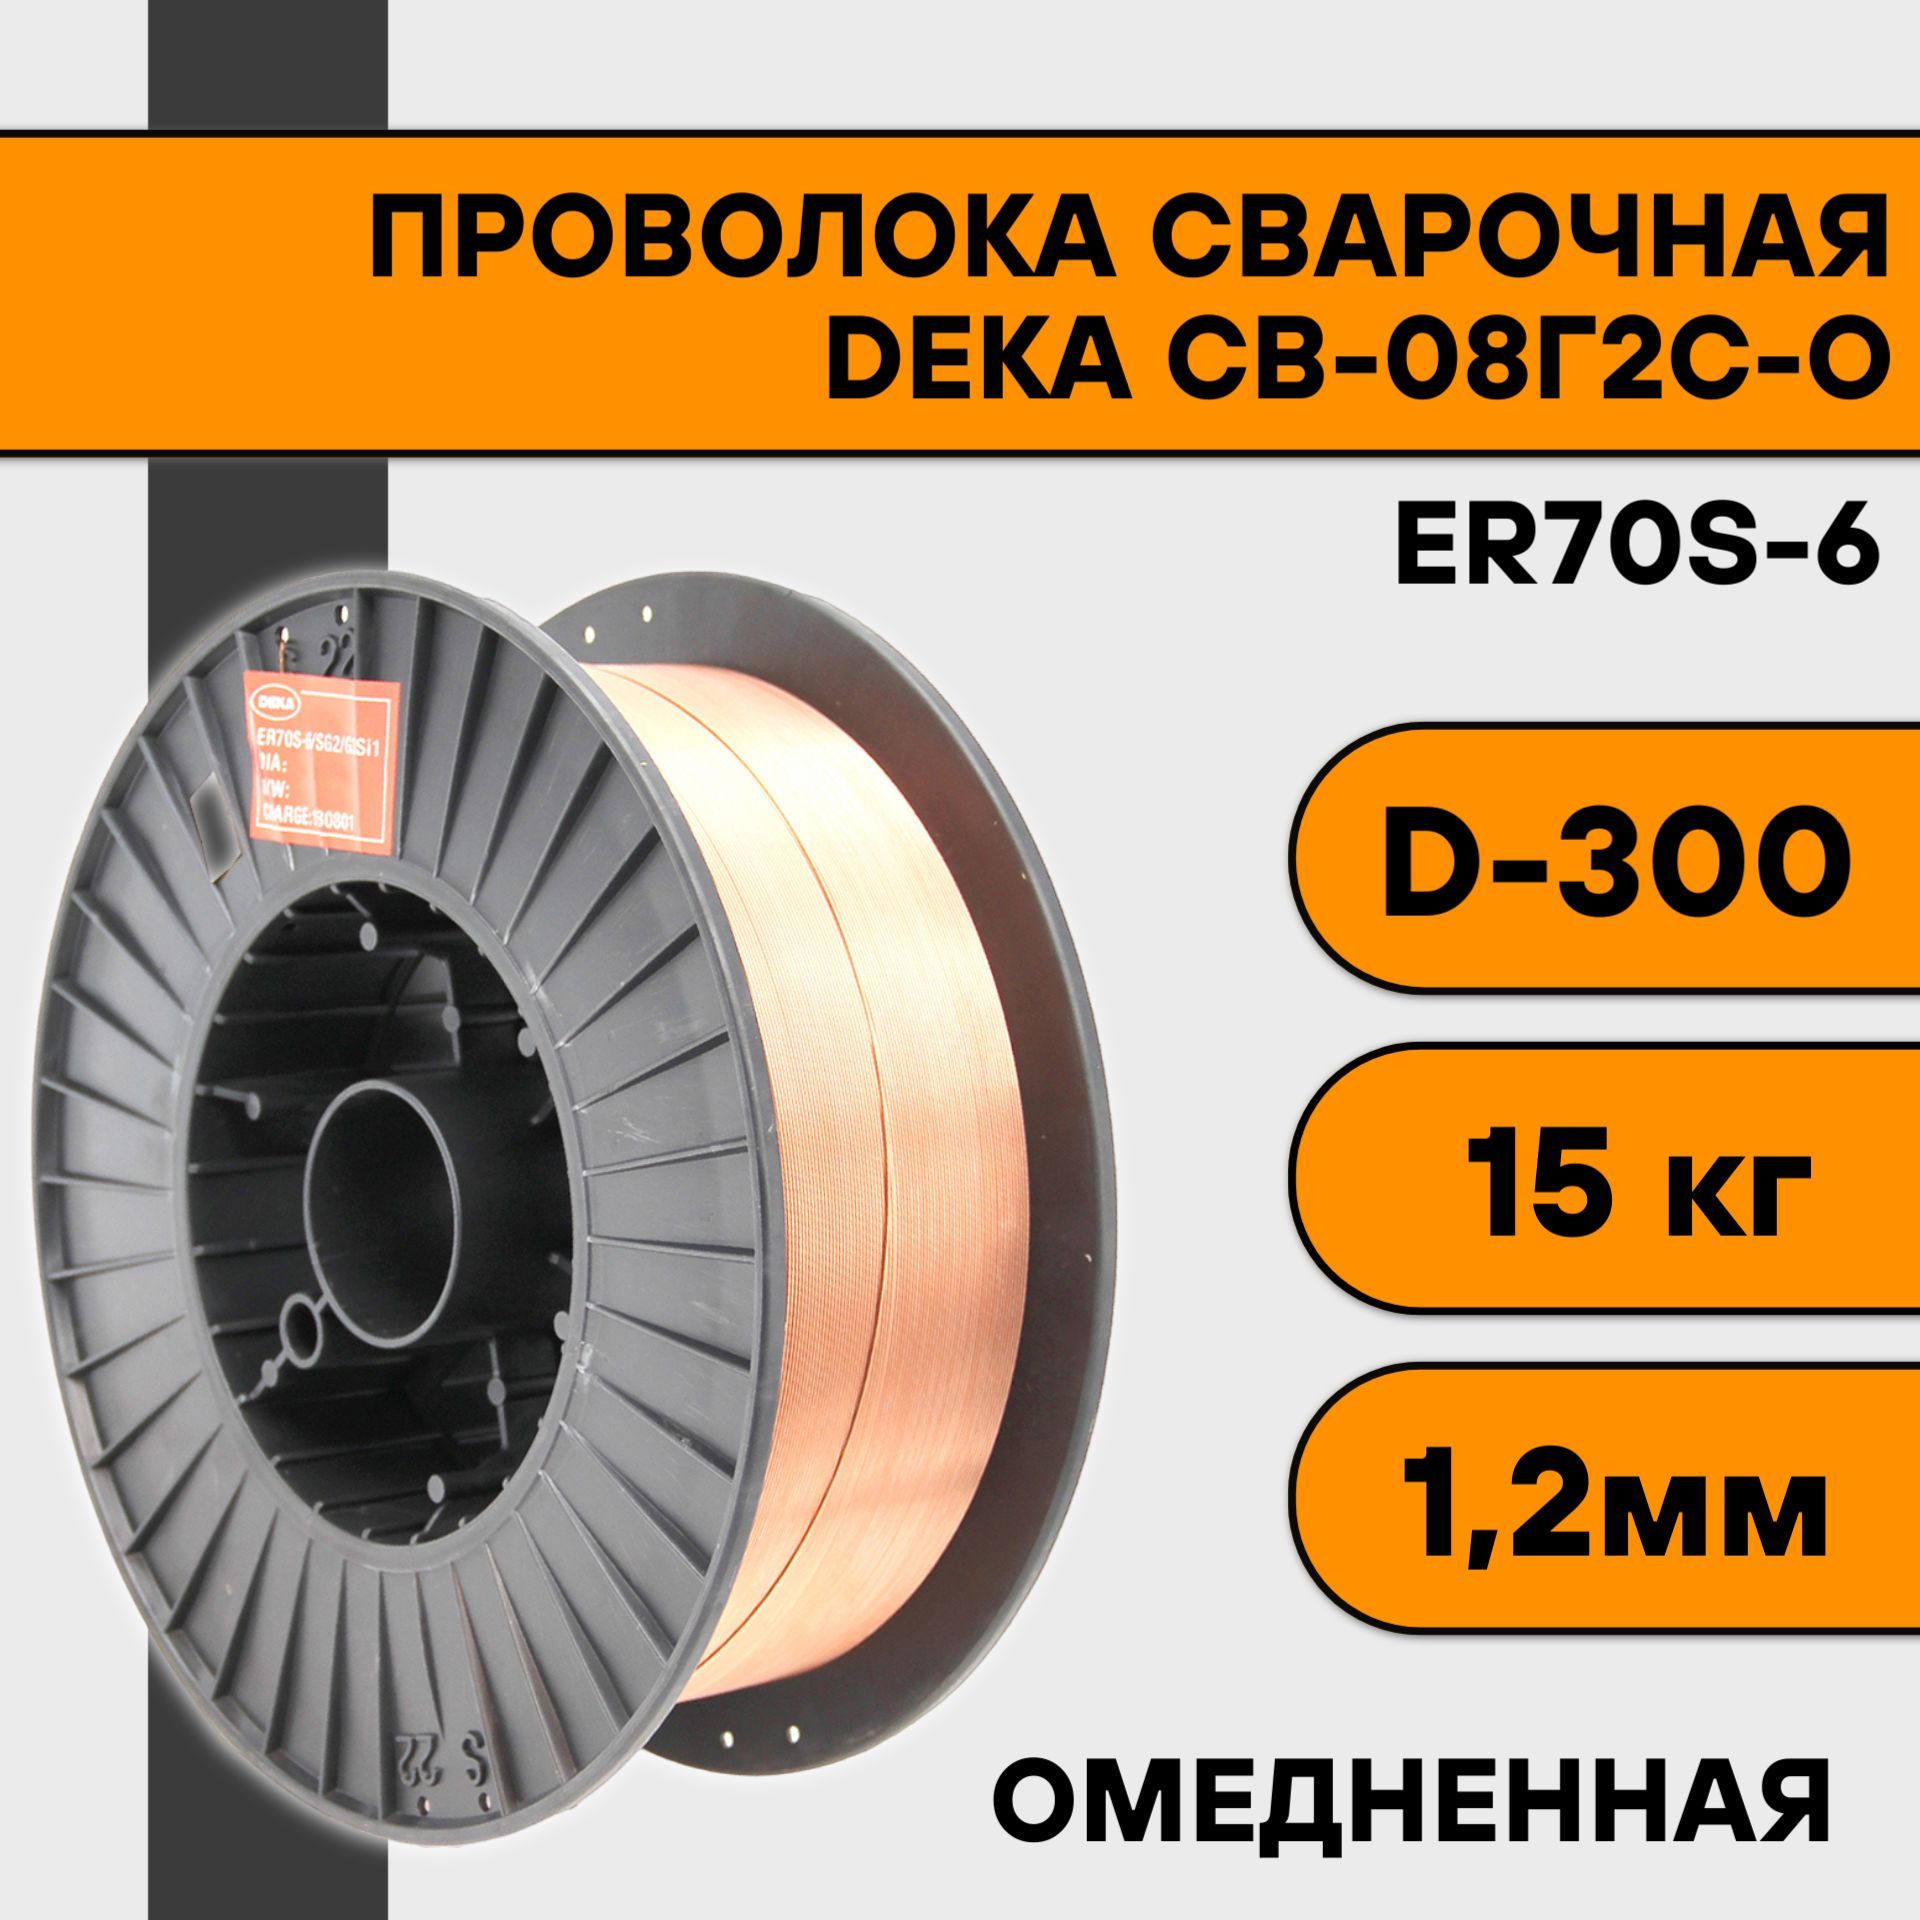 Сварочная проволока омедненная Deka ER70S-6 ф 1,2 мм (15 кг) D300 проволока сварочная er70s 6 омедненная 0 8 мм 1 кг